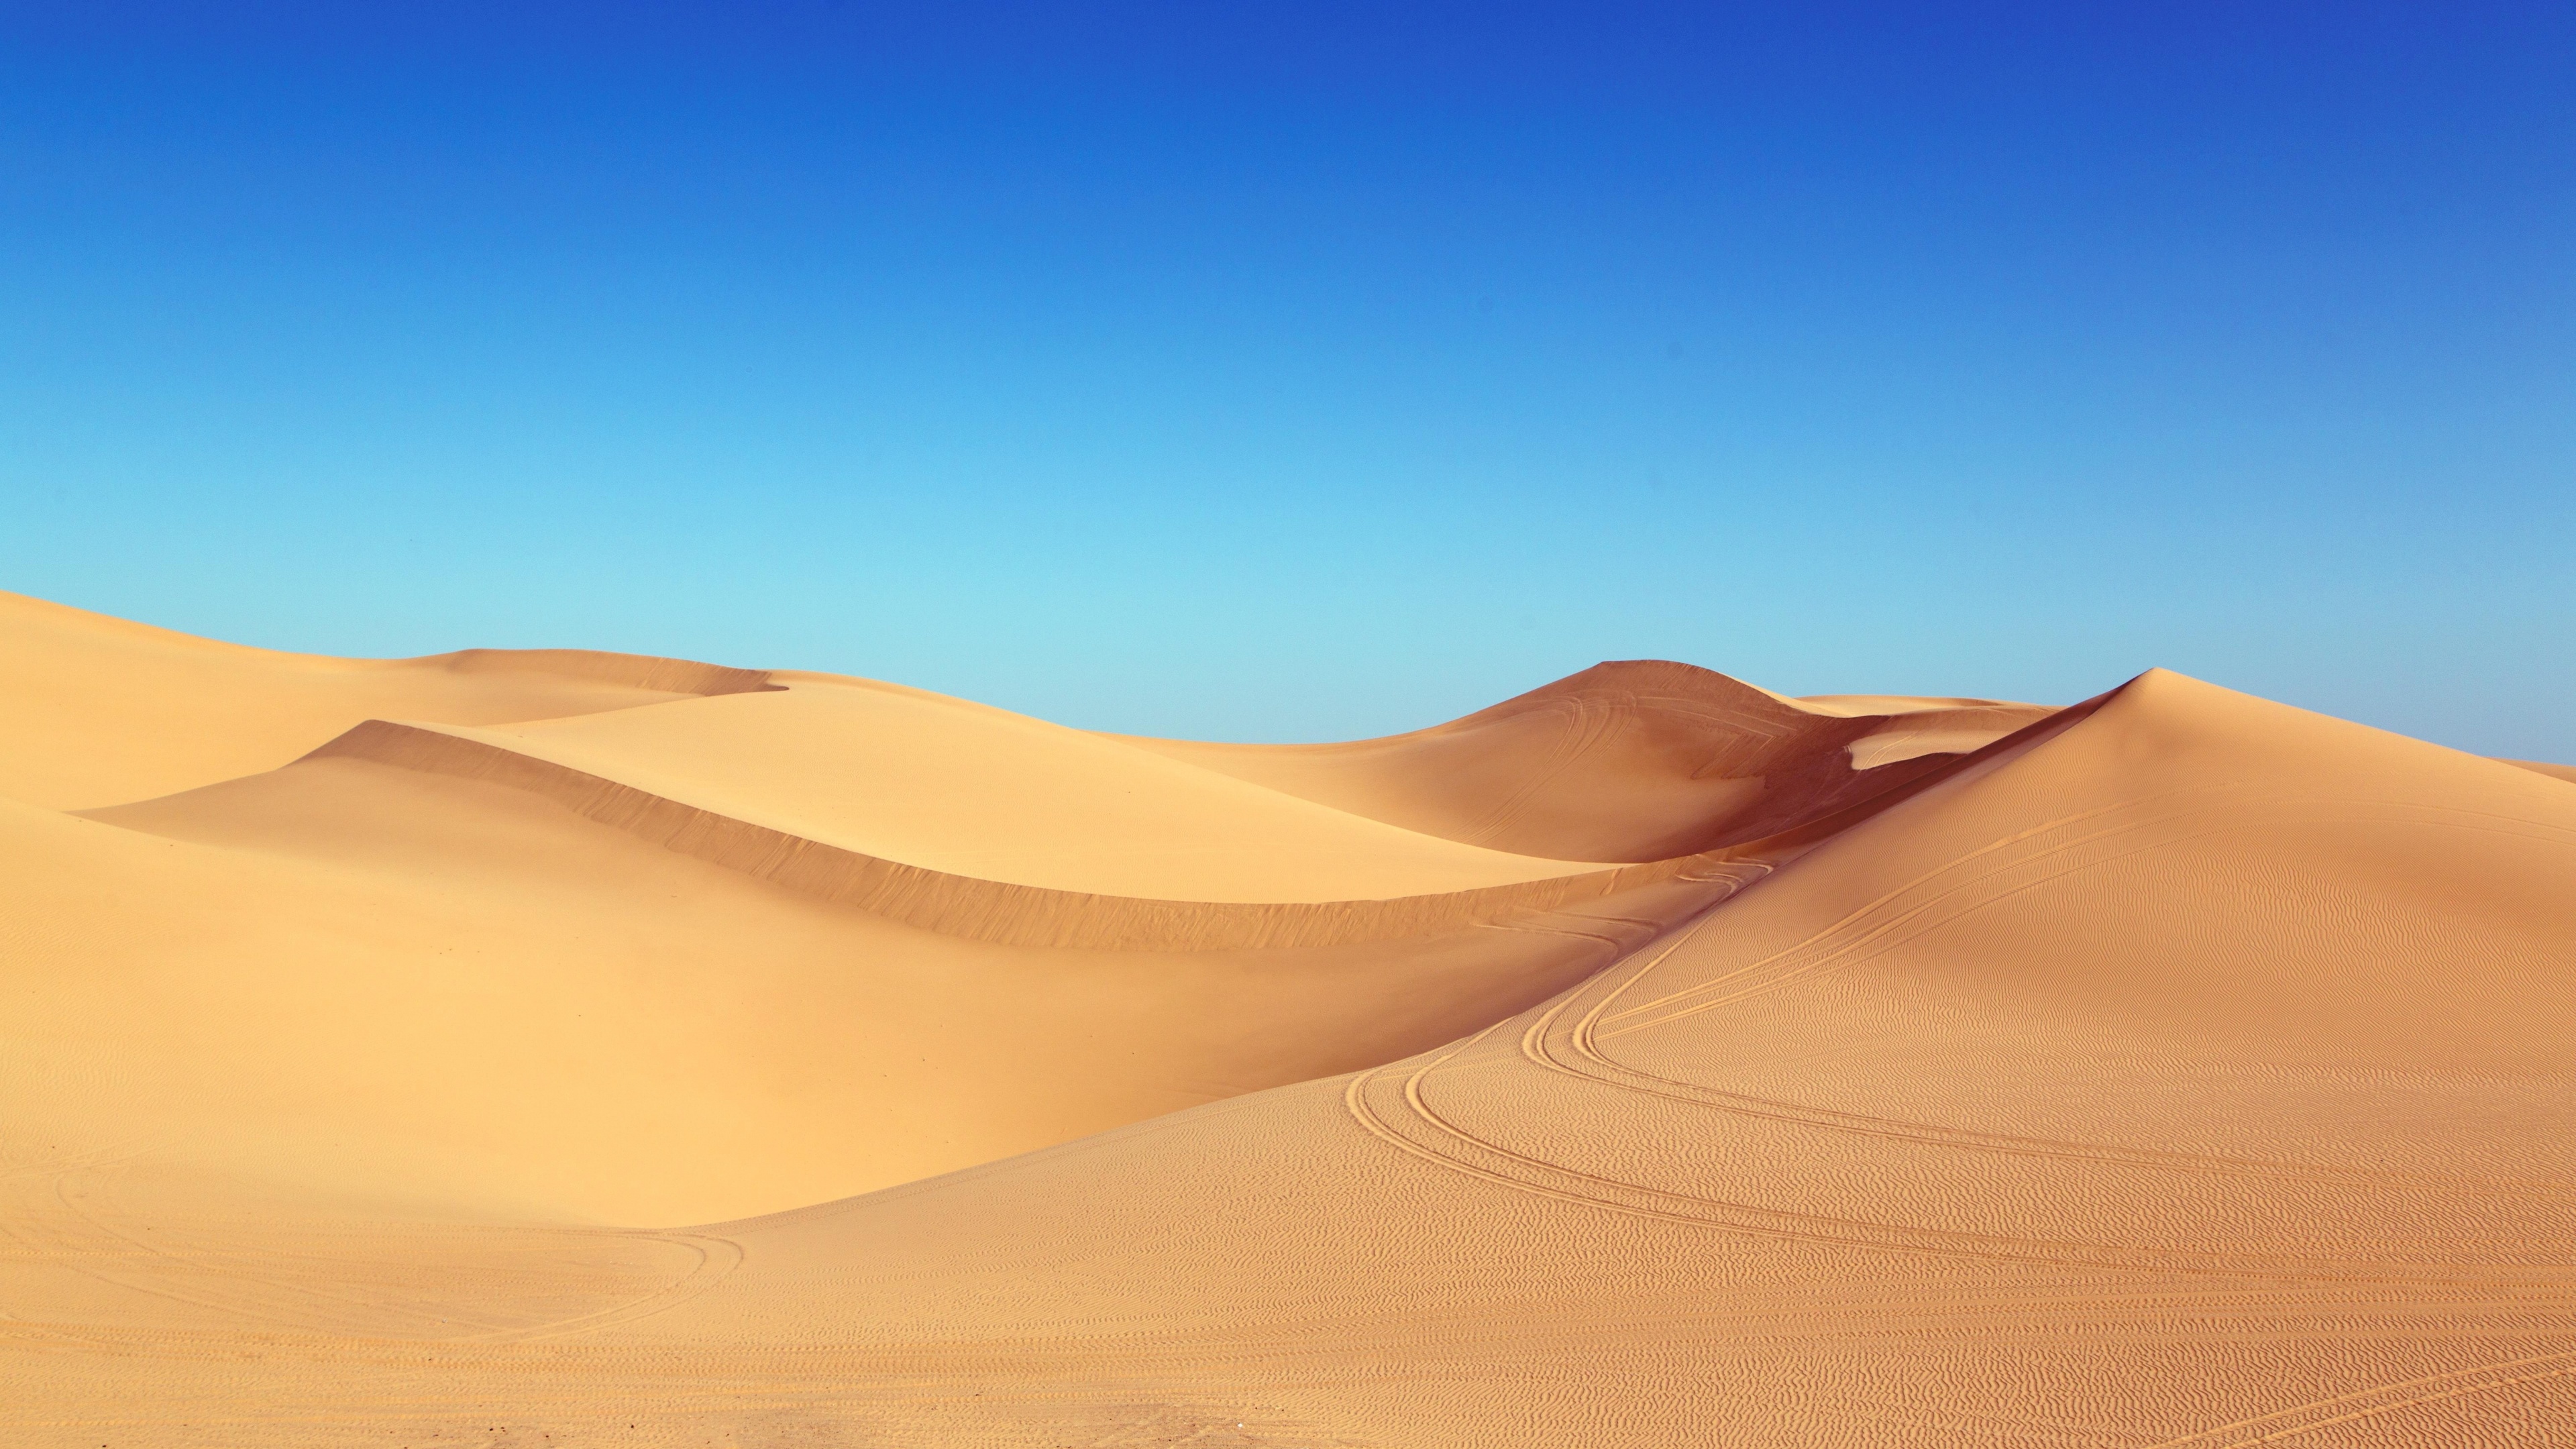 Desert Wallpaper 4K, Blue Sky, Sand Dunes, Clear sky